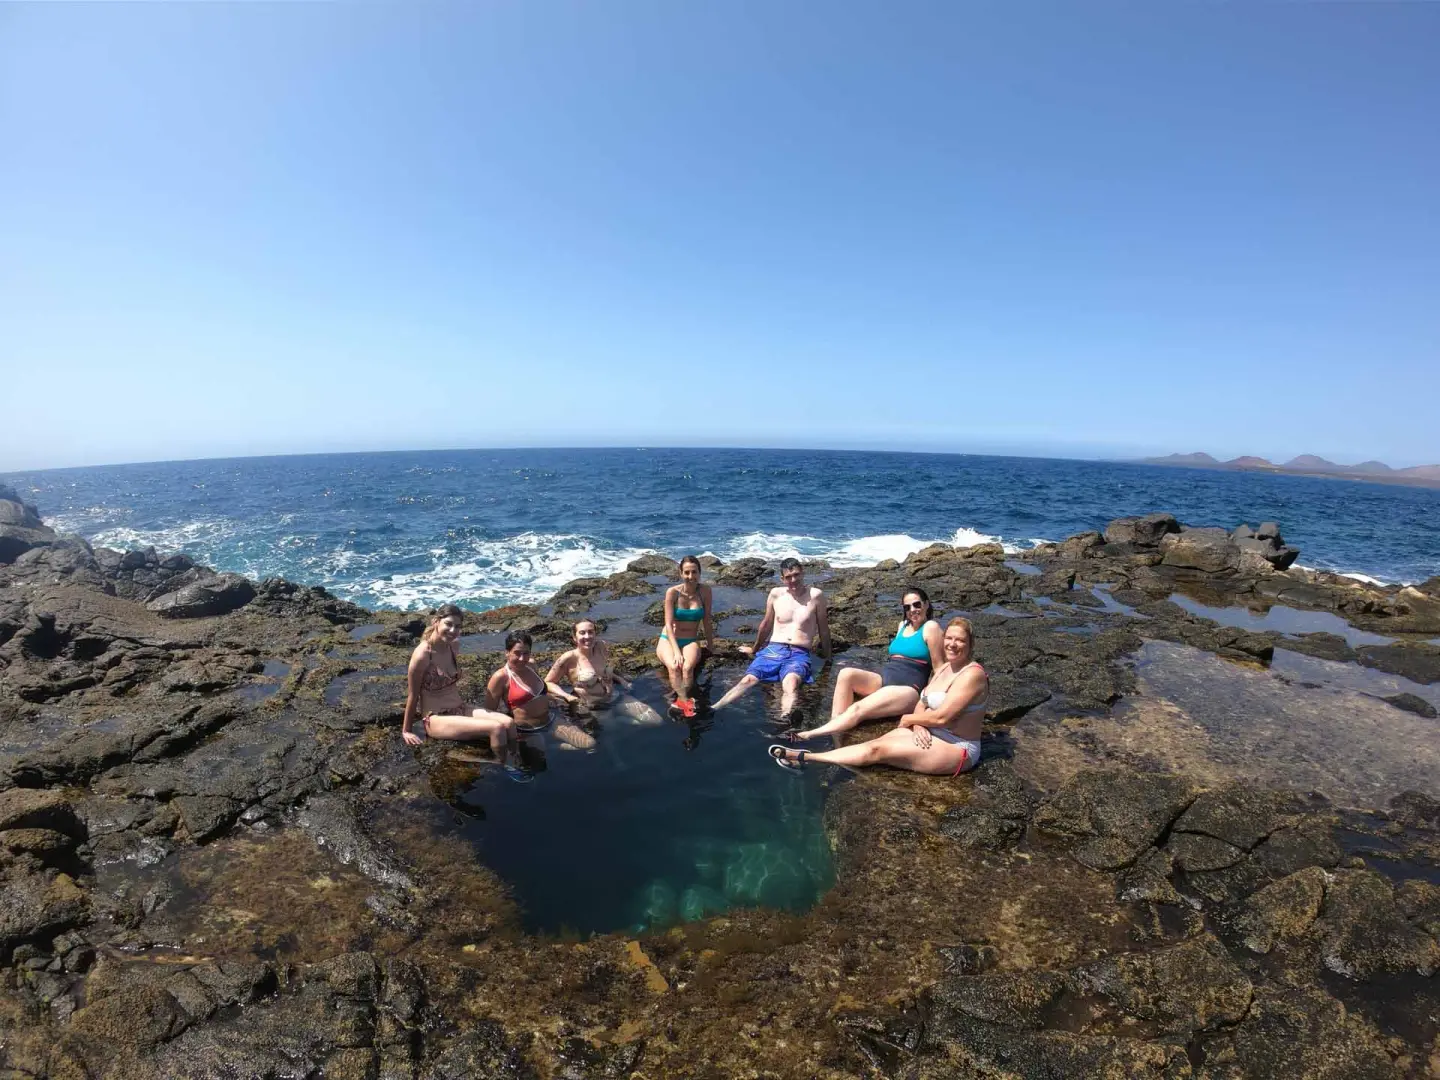 Actividades acuáticas, playas increíbles, no te pierdas la oportunidad de viajar en grupo a dos de las islas más destacadas de Canarias llenas de aventuras